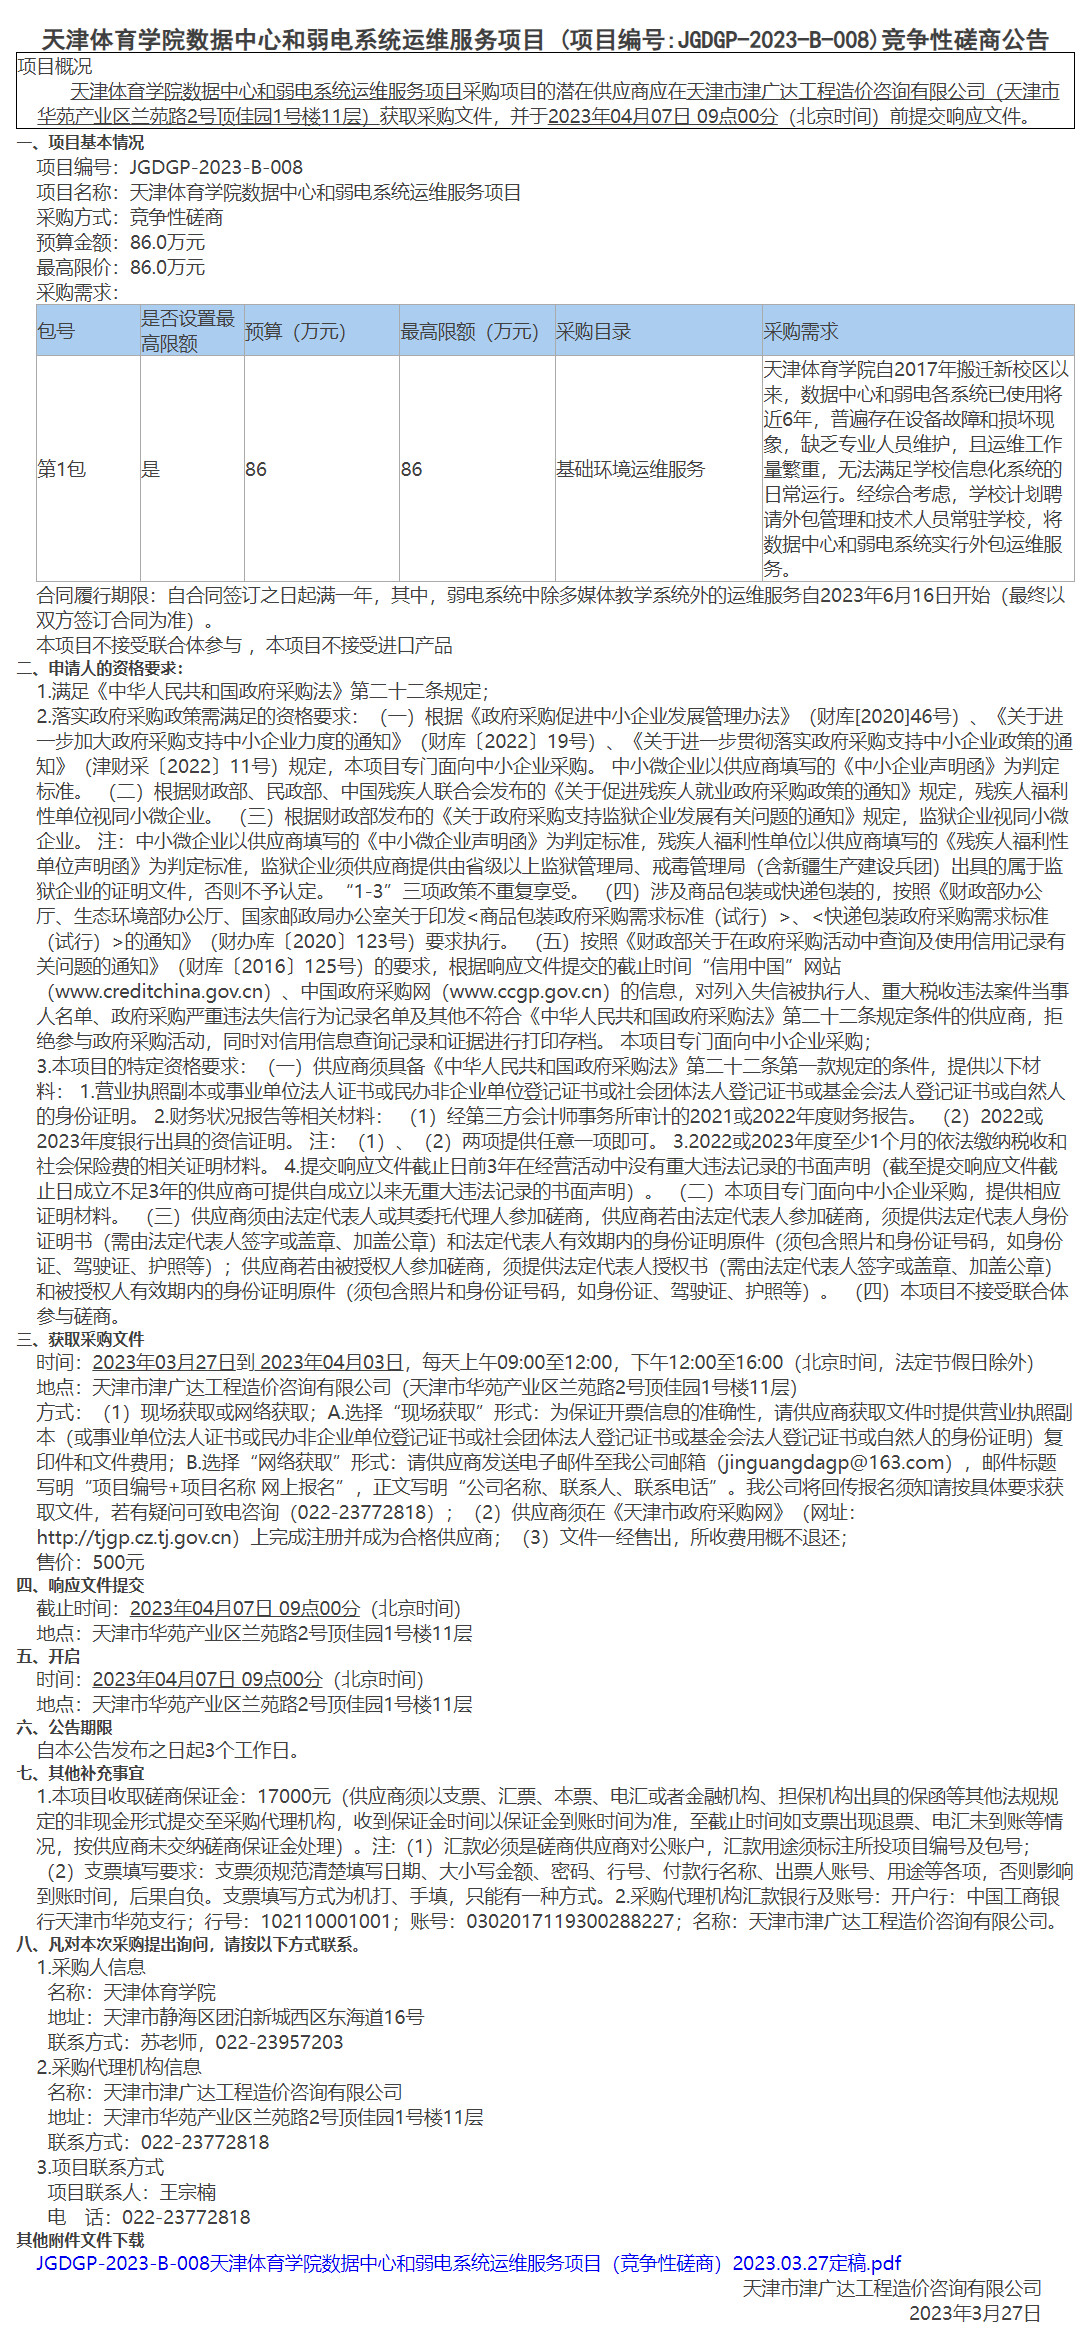 天津体育学院数据中心和弱电系统运维服务项目(图1)